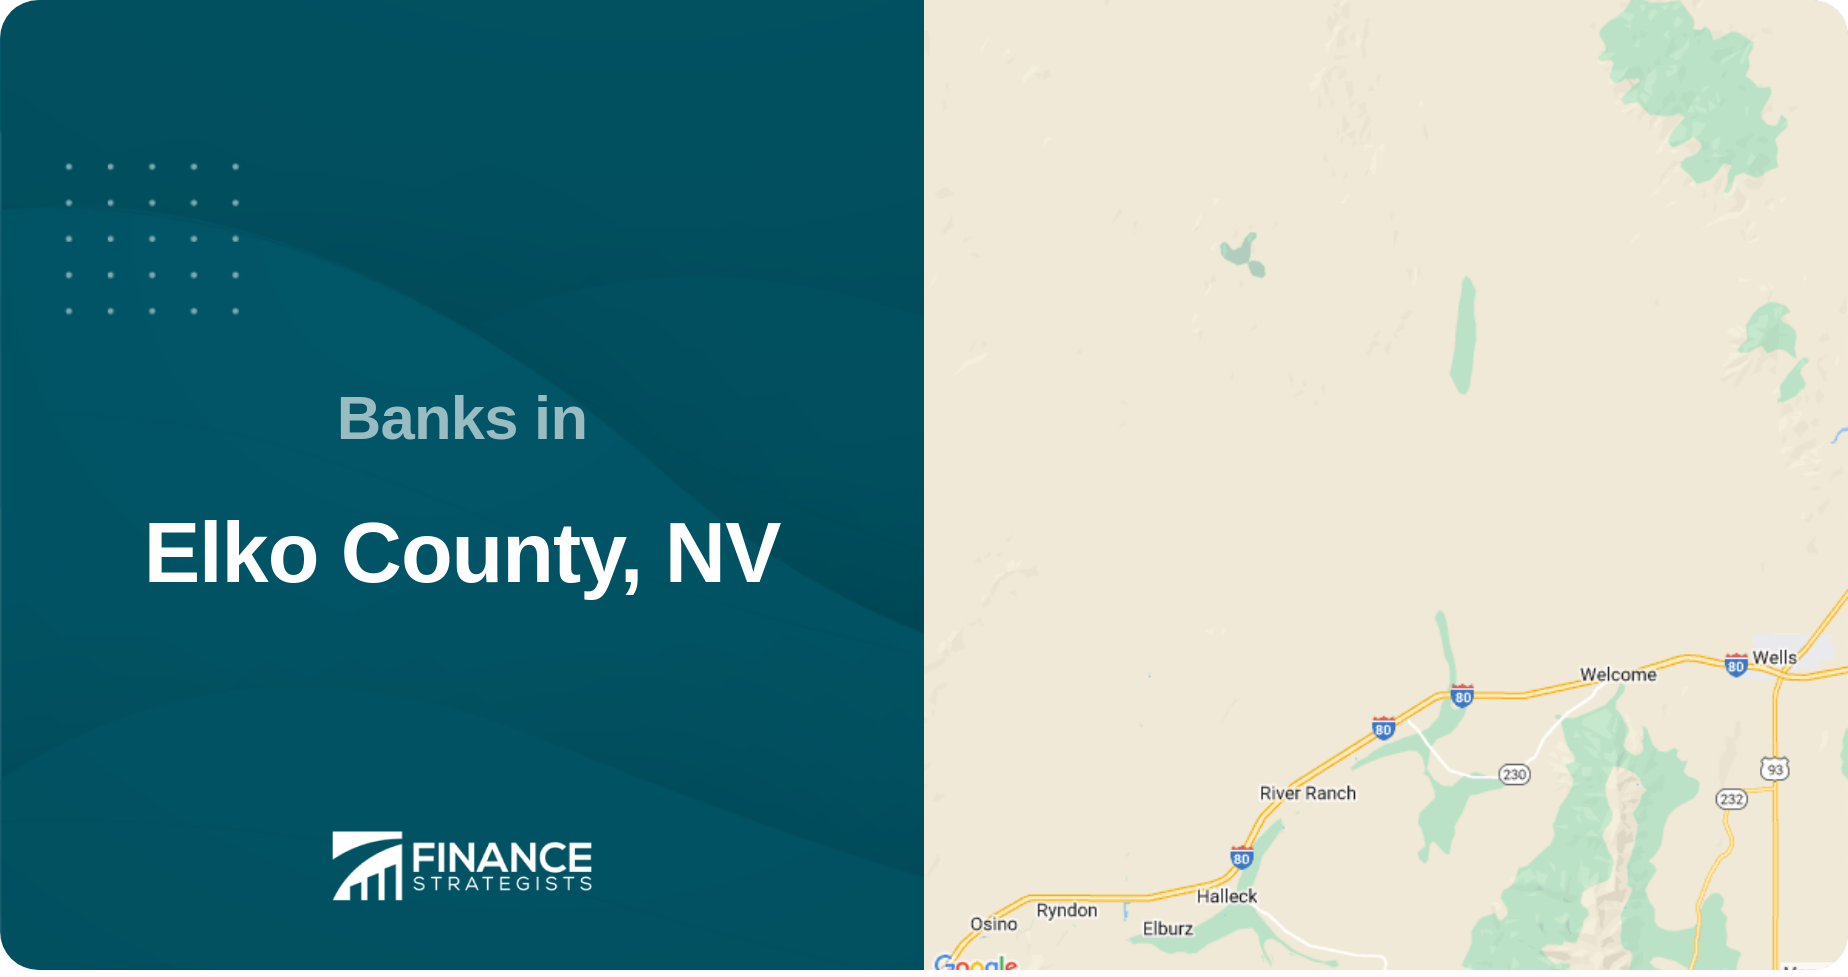 Banks in Elko County, NV